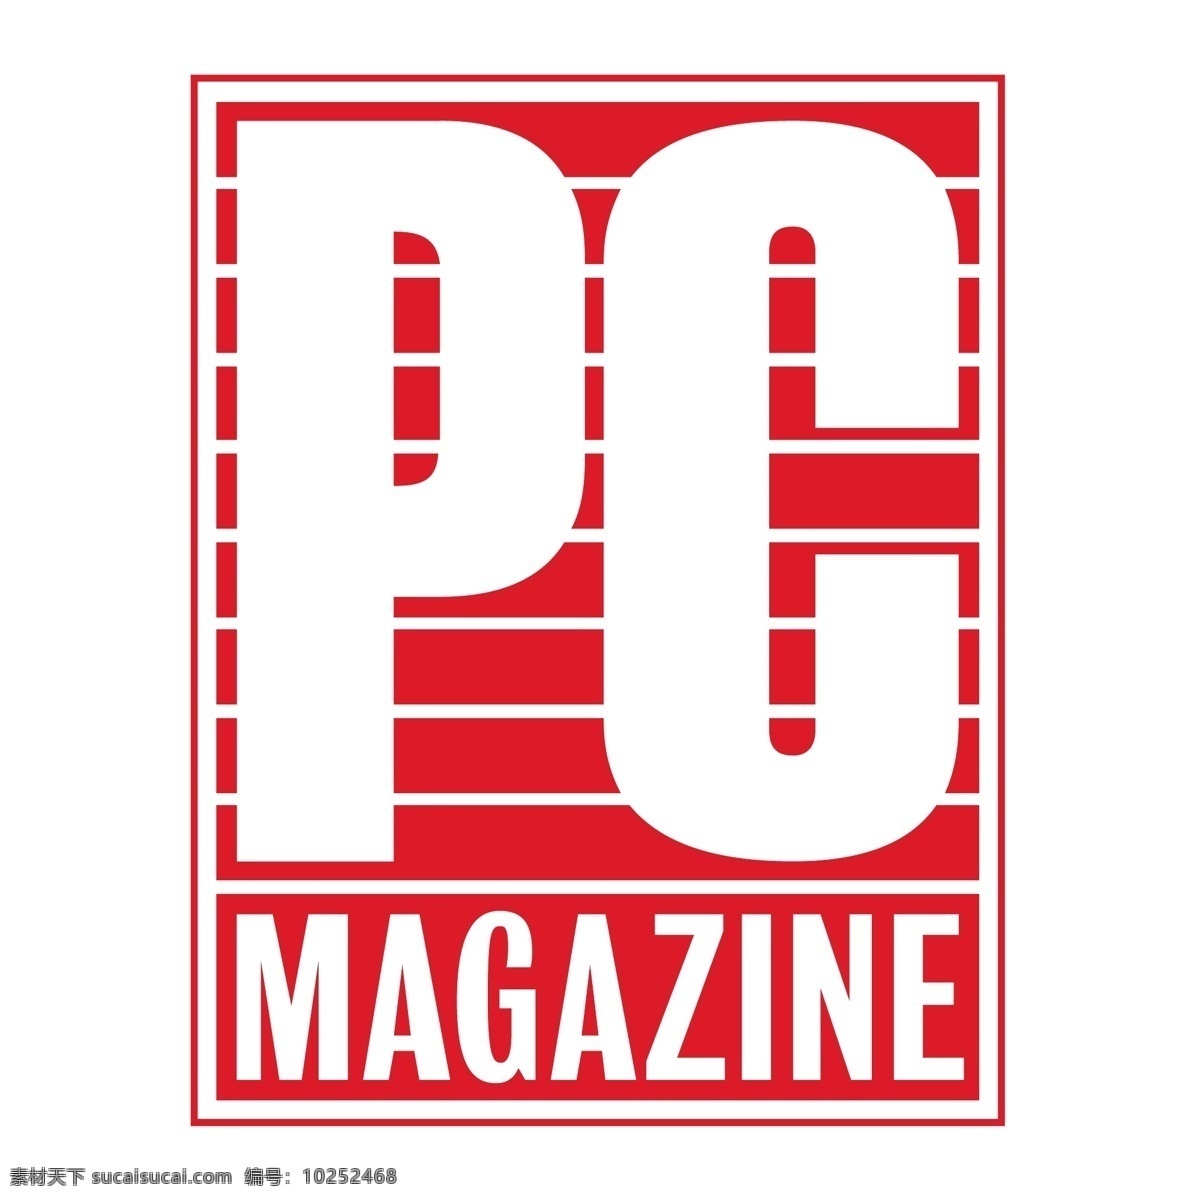 个人 电脑杂志 标识 公司 免费 品牌 品牌标识 商标 矢量标志下载 免费矢量标识 矢量 psd源文件 logo设计